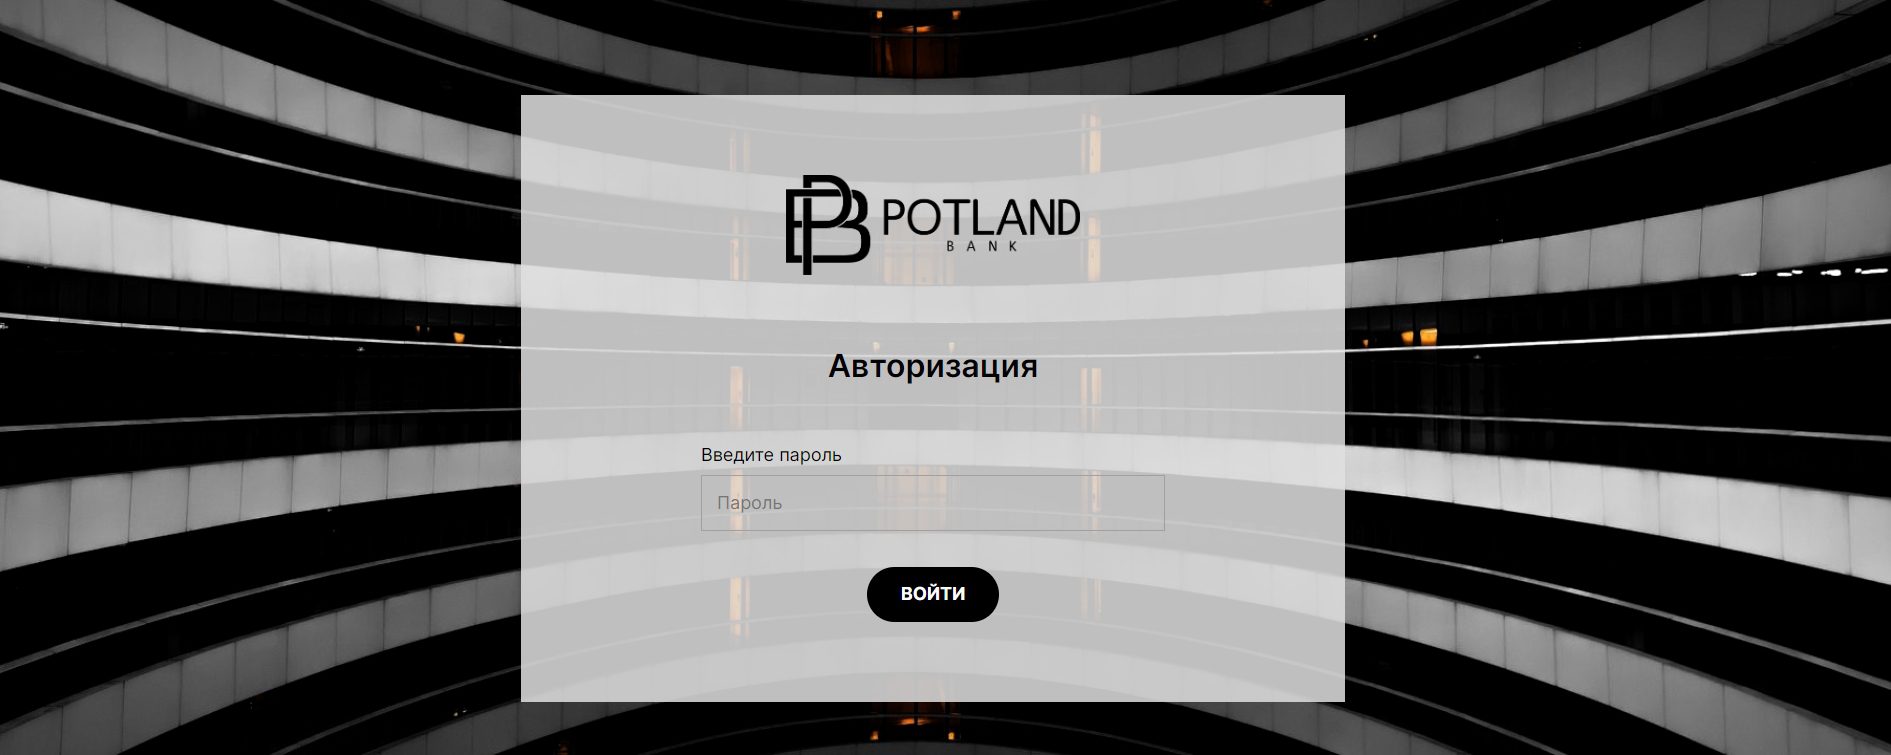 Сайт брокера Potland Bank